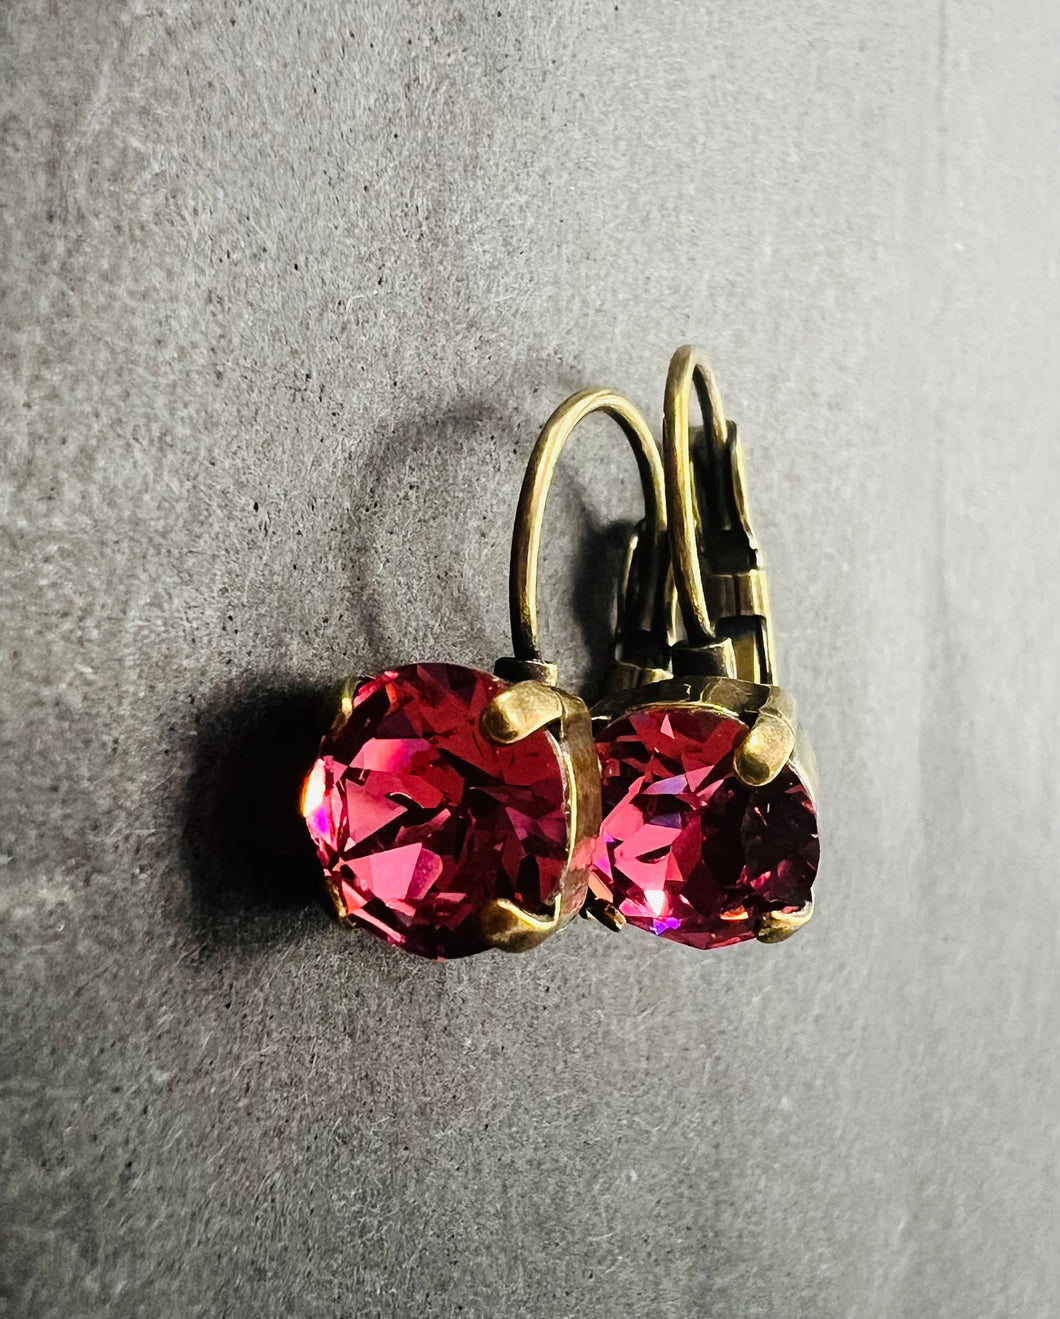 Clustlysau drop Crisial Pinc rhosyn / Rose pink Crystal drop Earrings